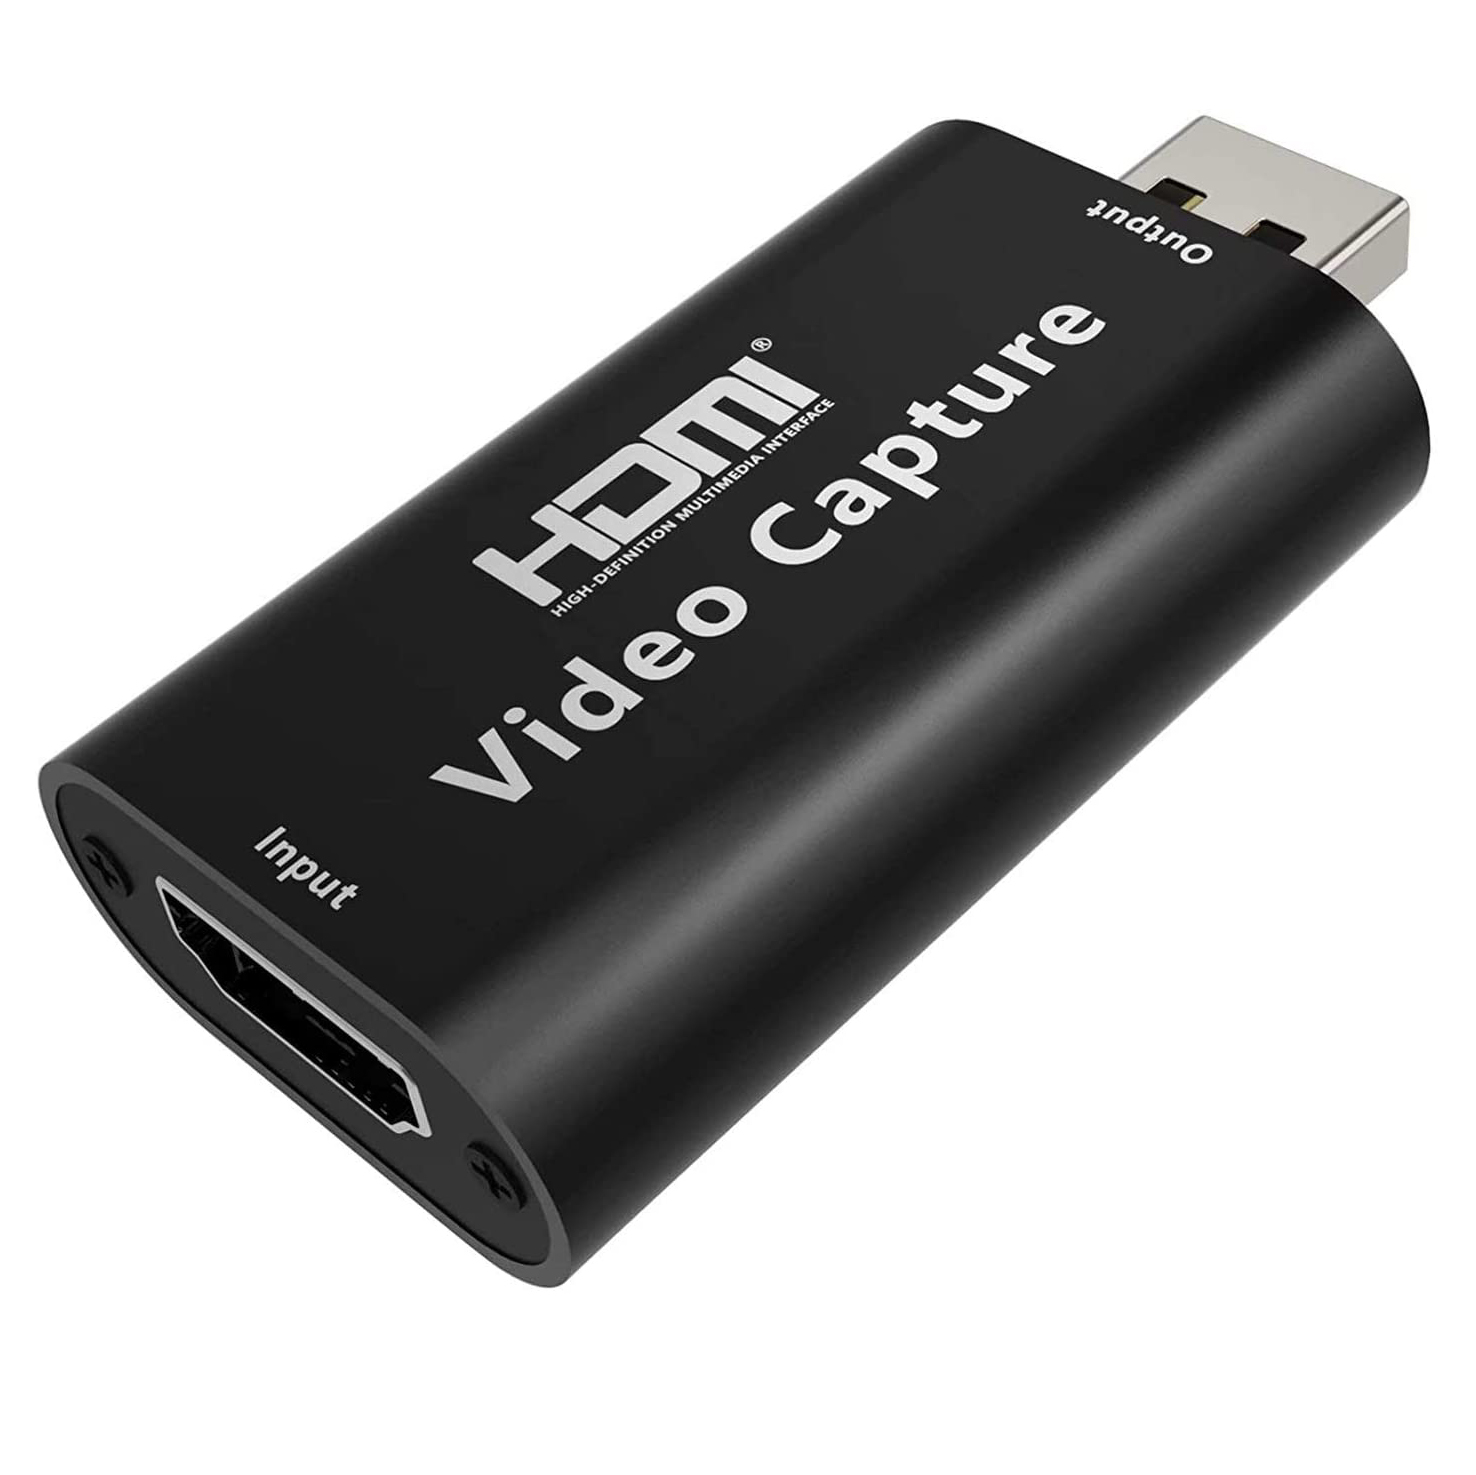 Capturadora de video y audio HDMI 1.4 a USB 2.0